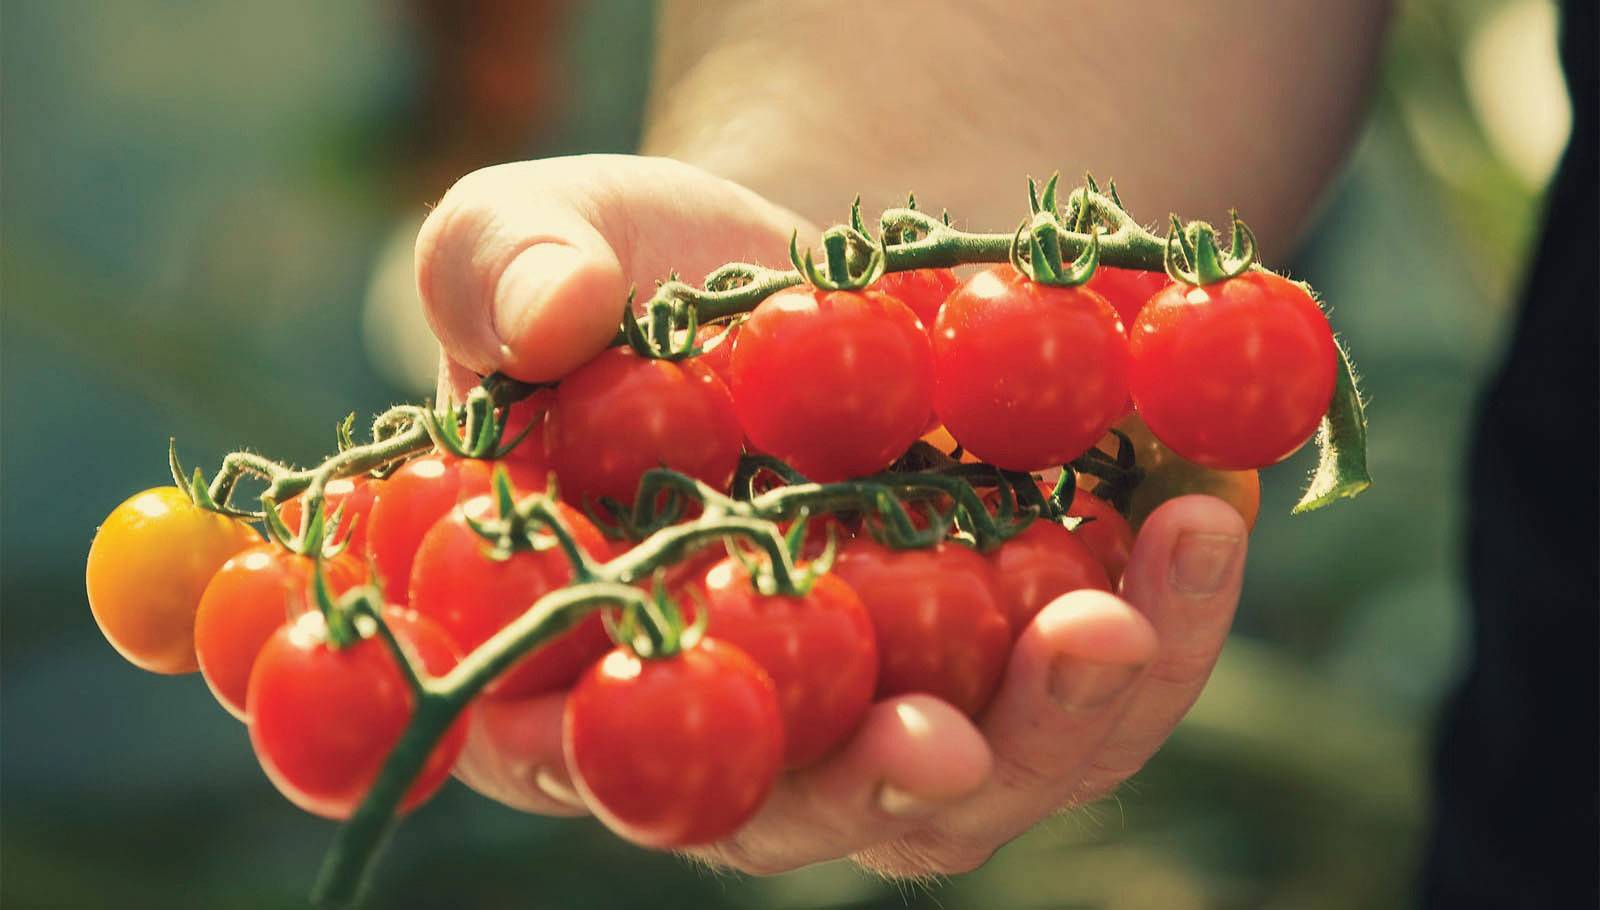 Томат "клюква в сахаре" - отзывы покупателей. выращивание и уход за сортом томатов "клюква в сахаре"